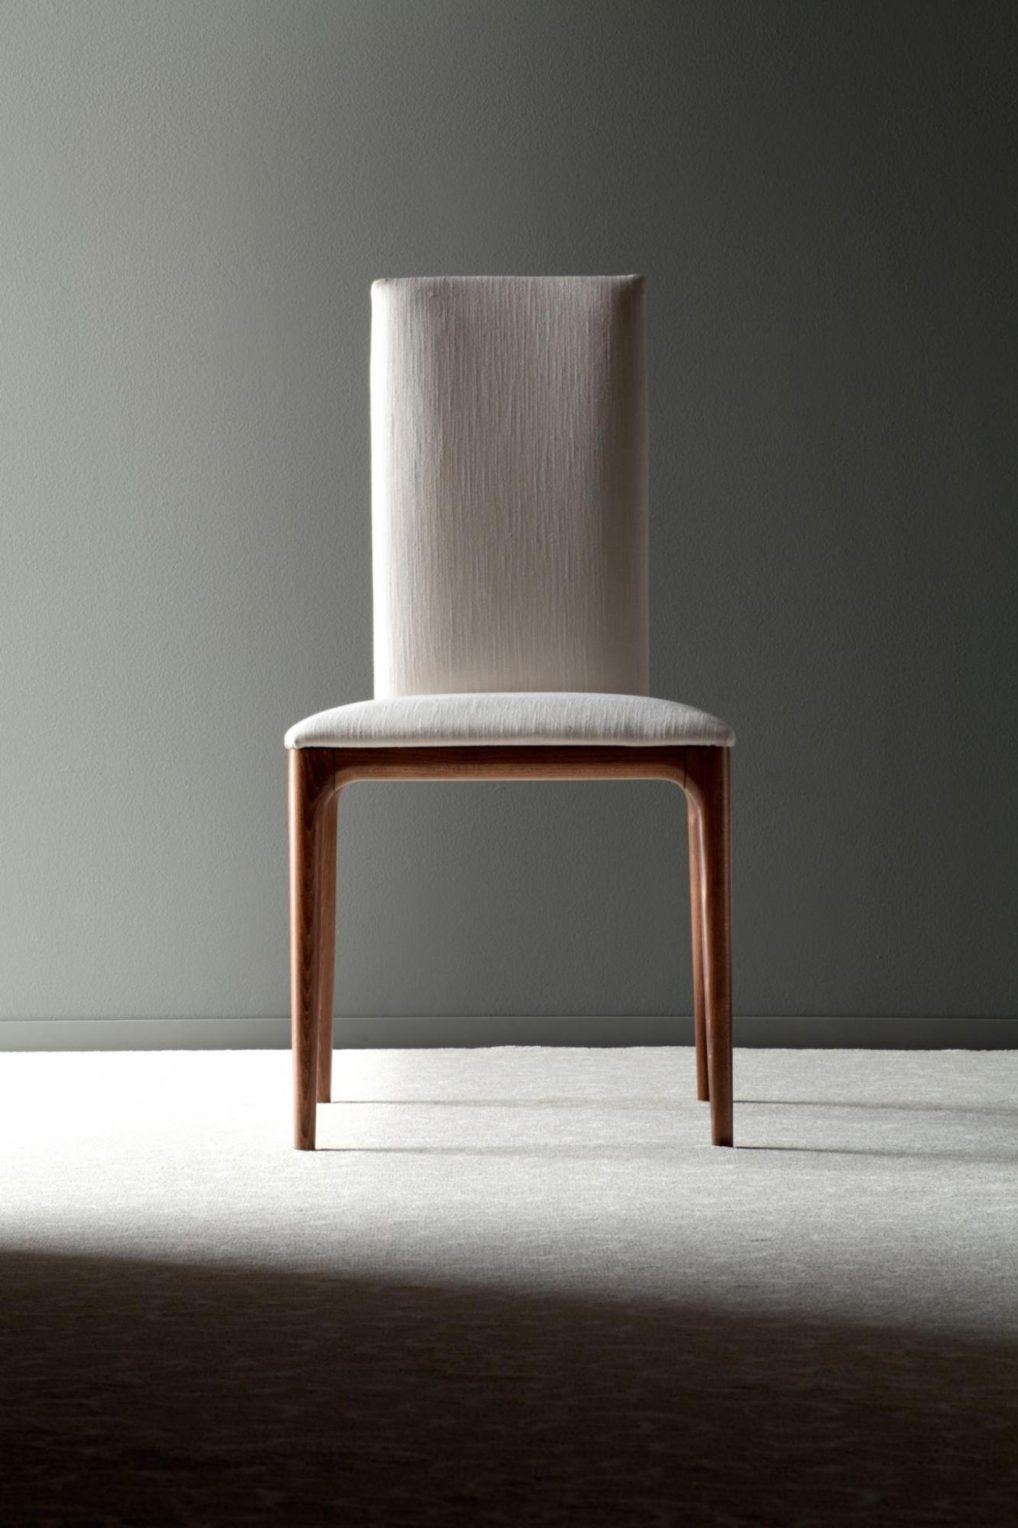 意大利家具costantinipietro的chairs-Four seasons 1 餐椅 主图